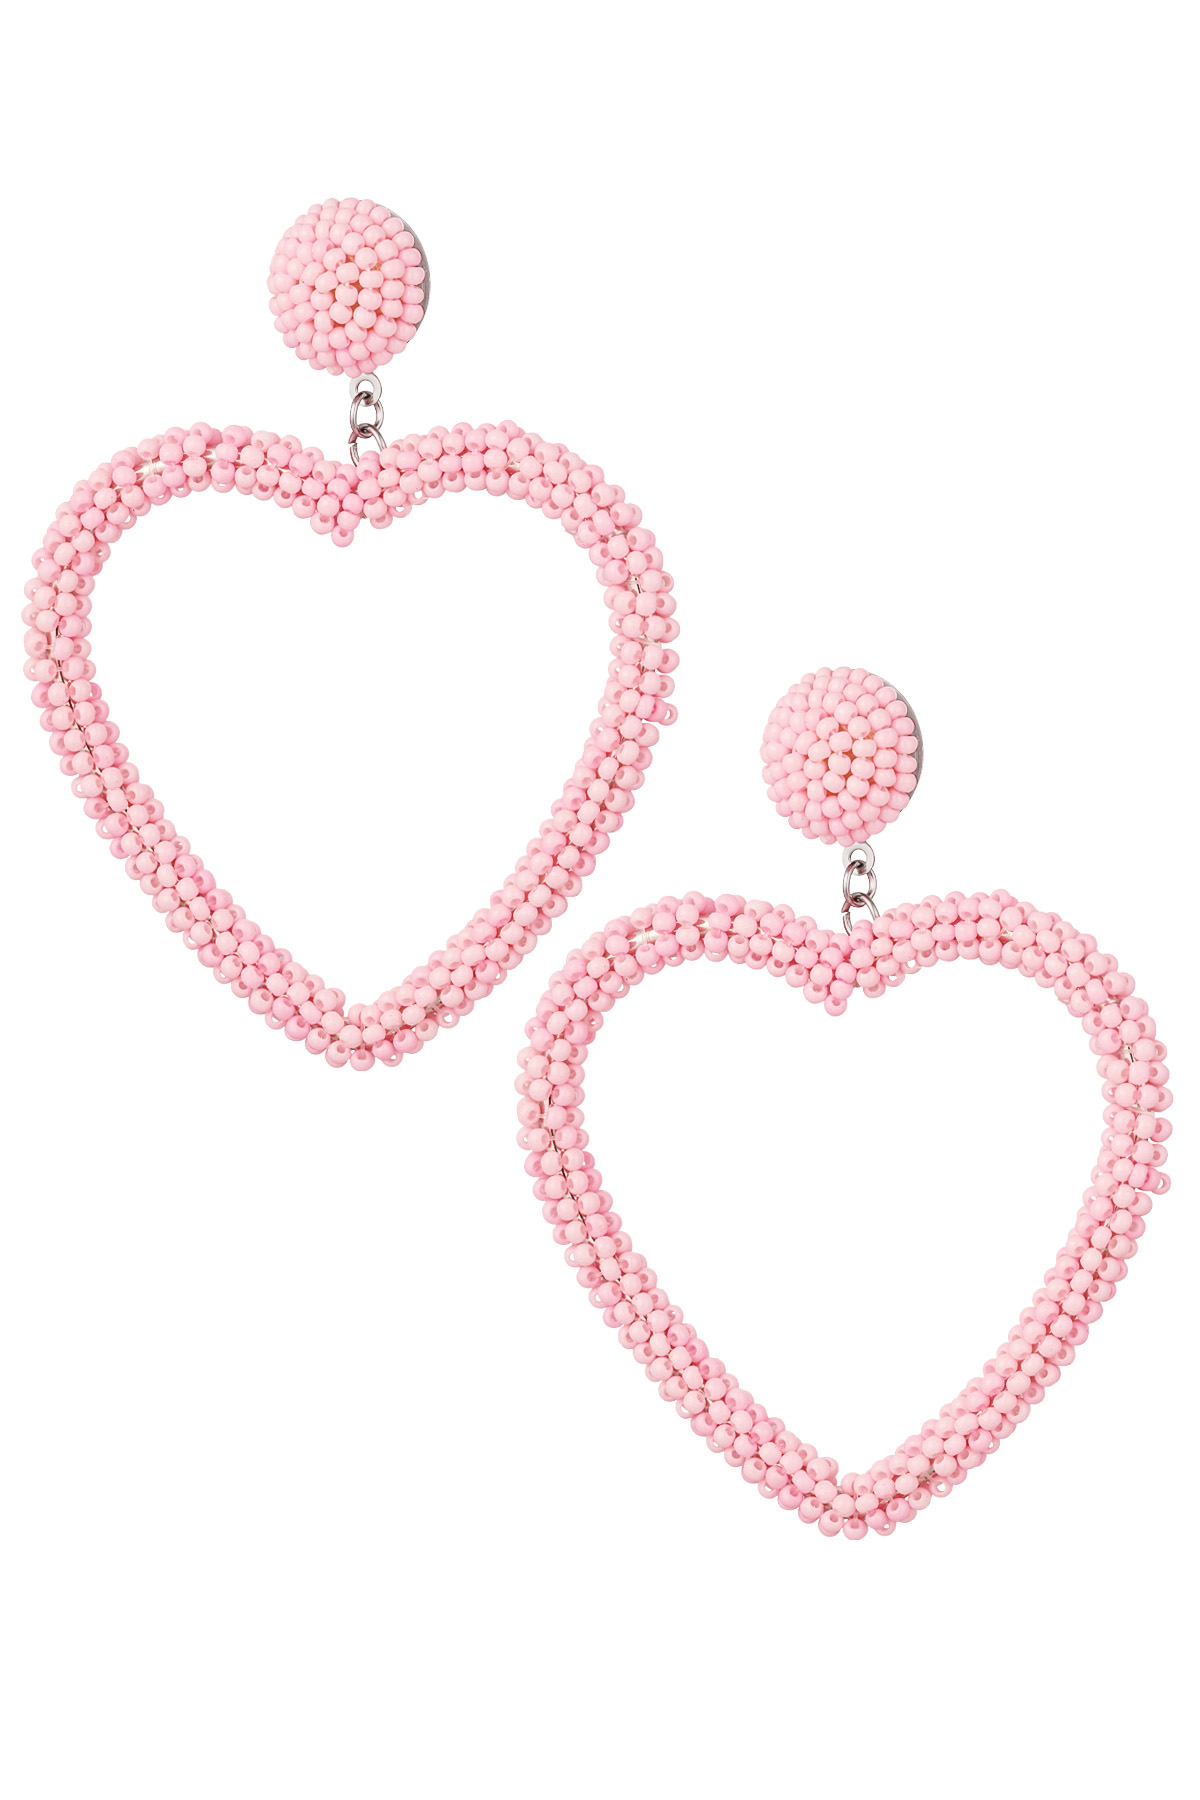 Boucles d'oreilles perles bonbon - rose pastel Acier Inoxydable 